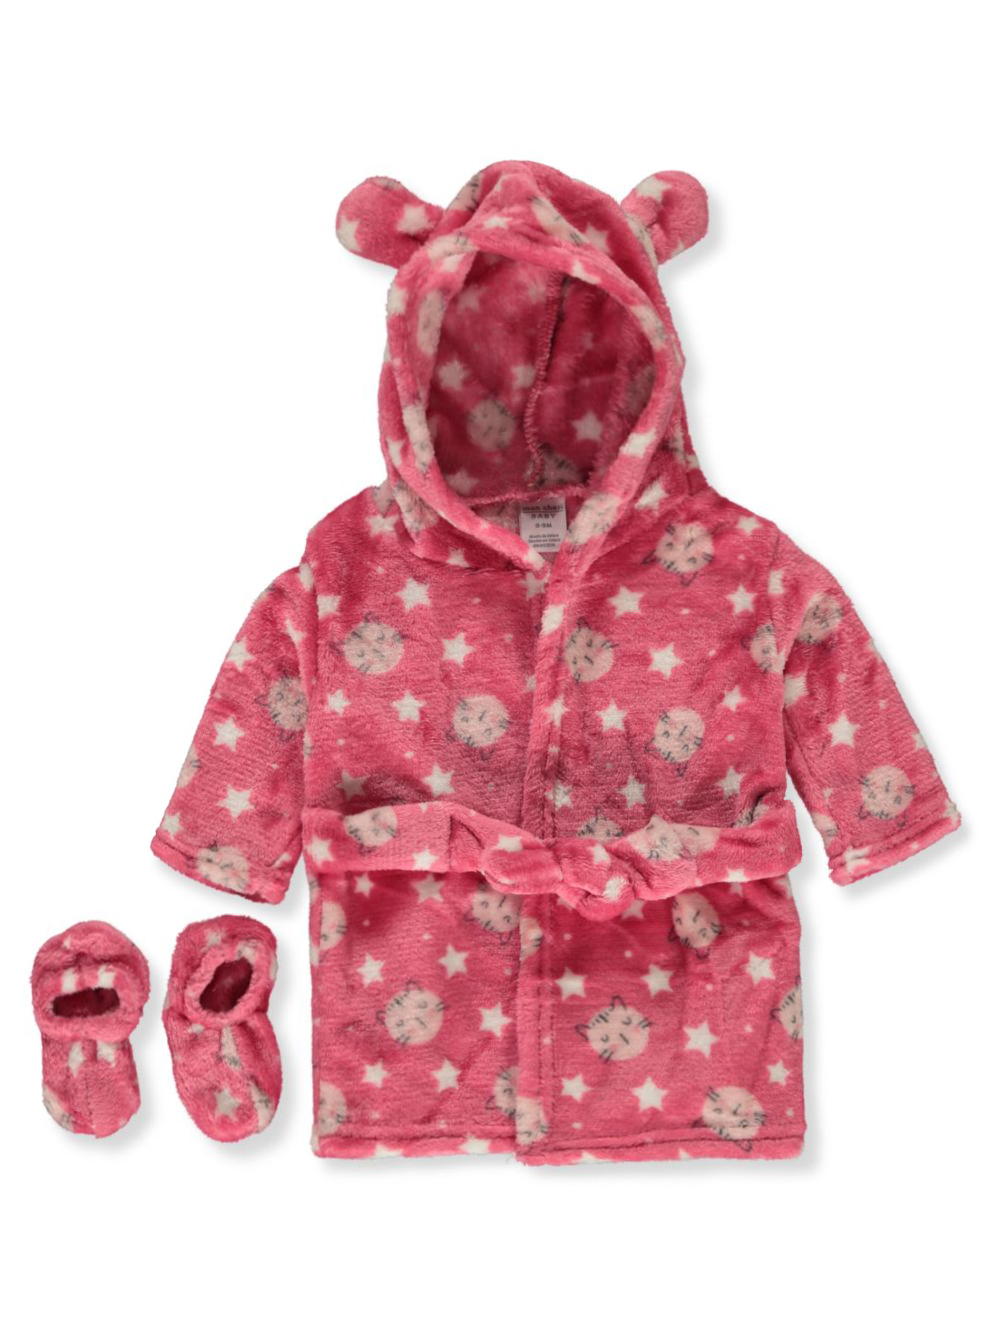 Mon Cheri Infant Girls Bath Robe Pink Princess Cotton Size 0-9 Month NWT 